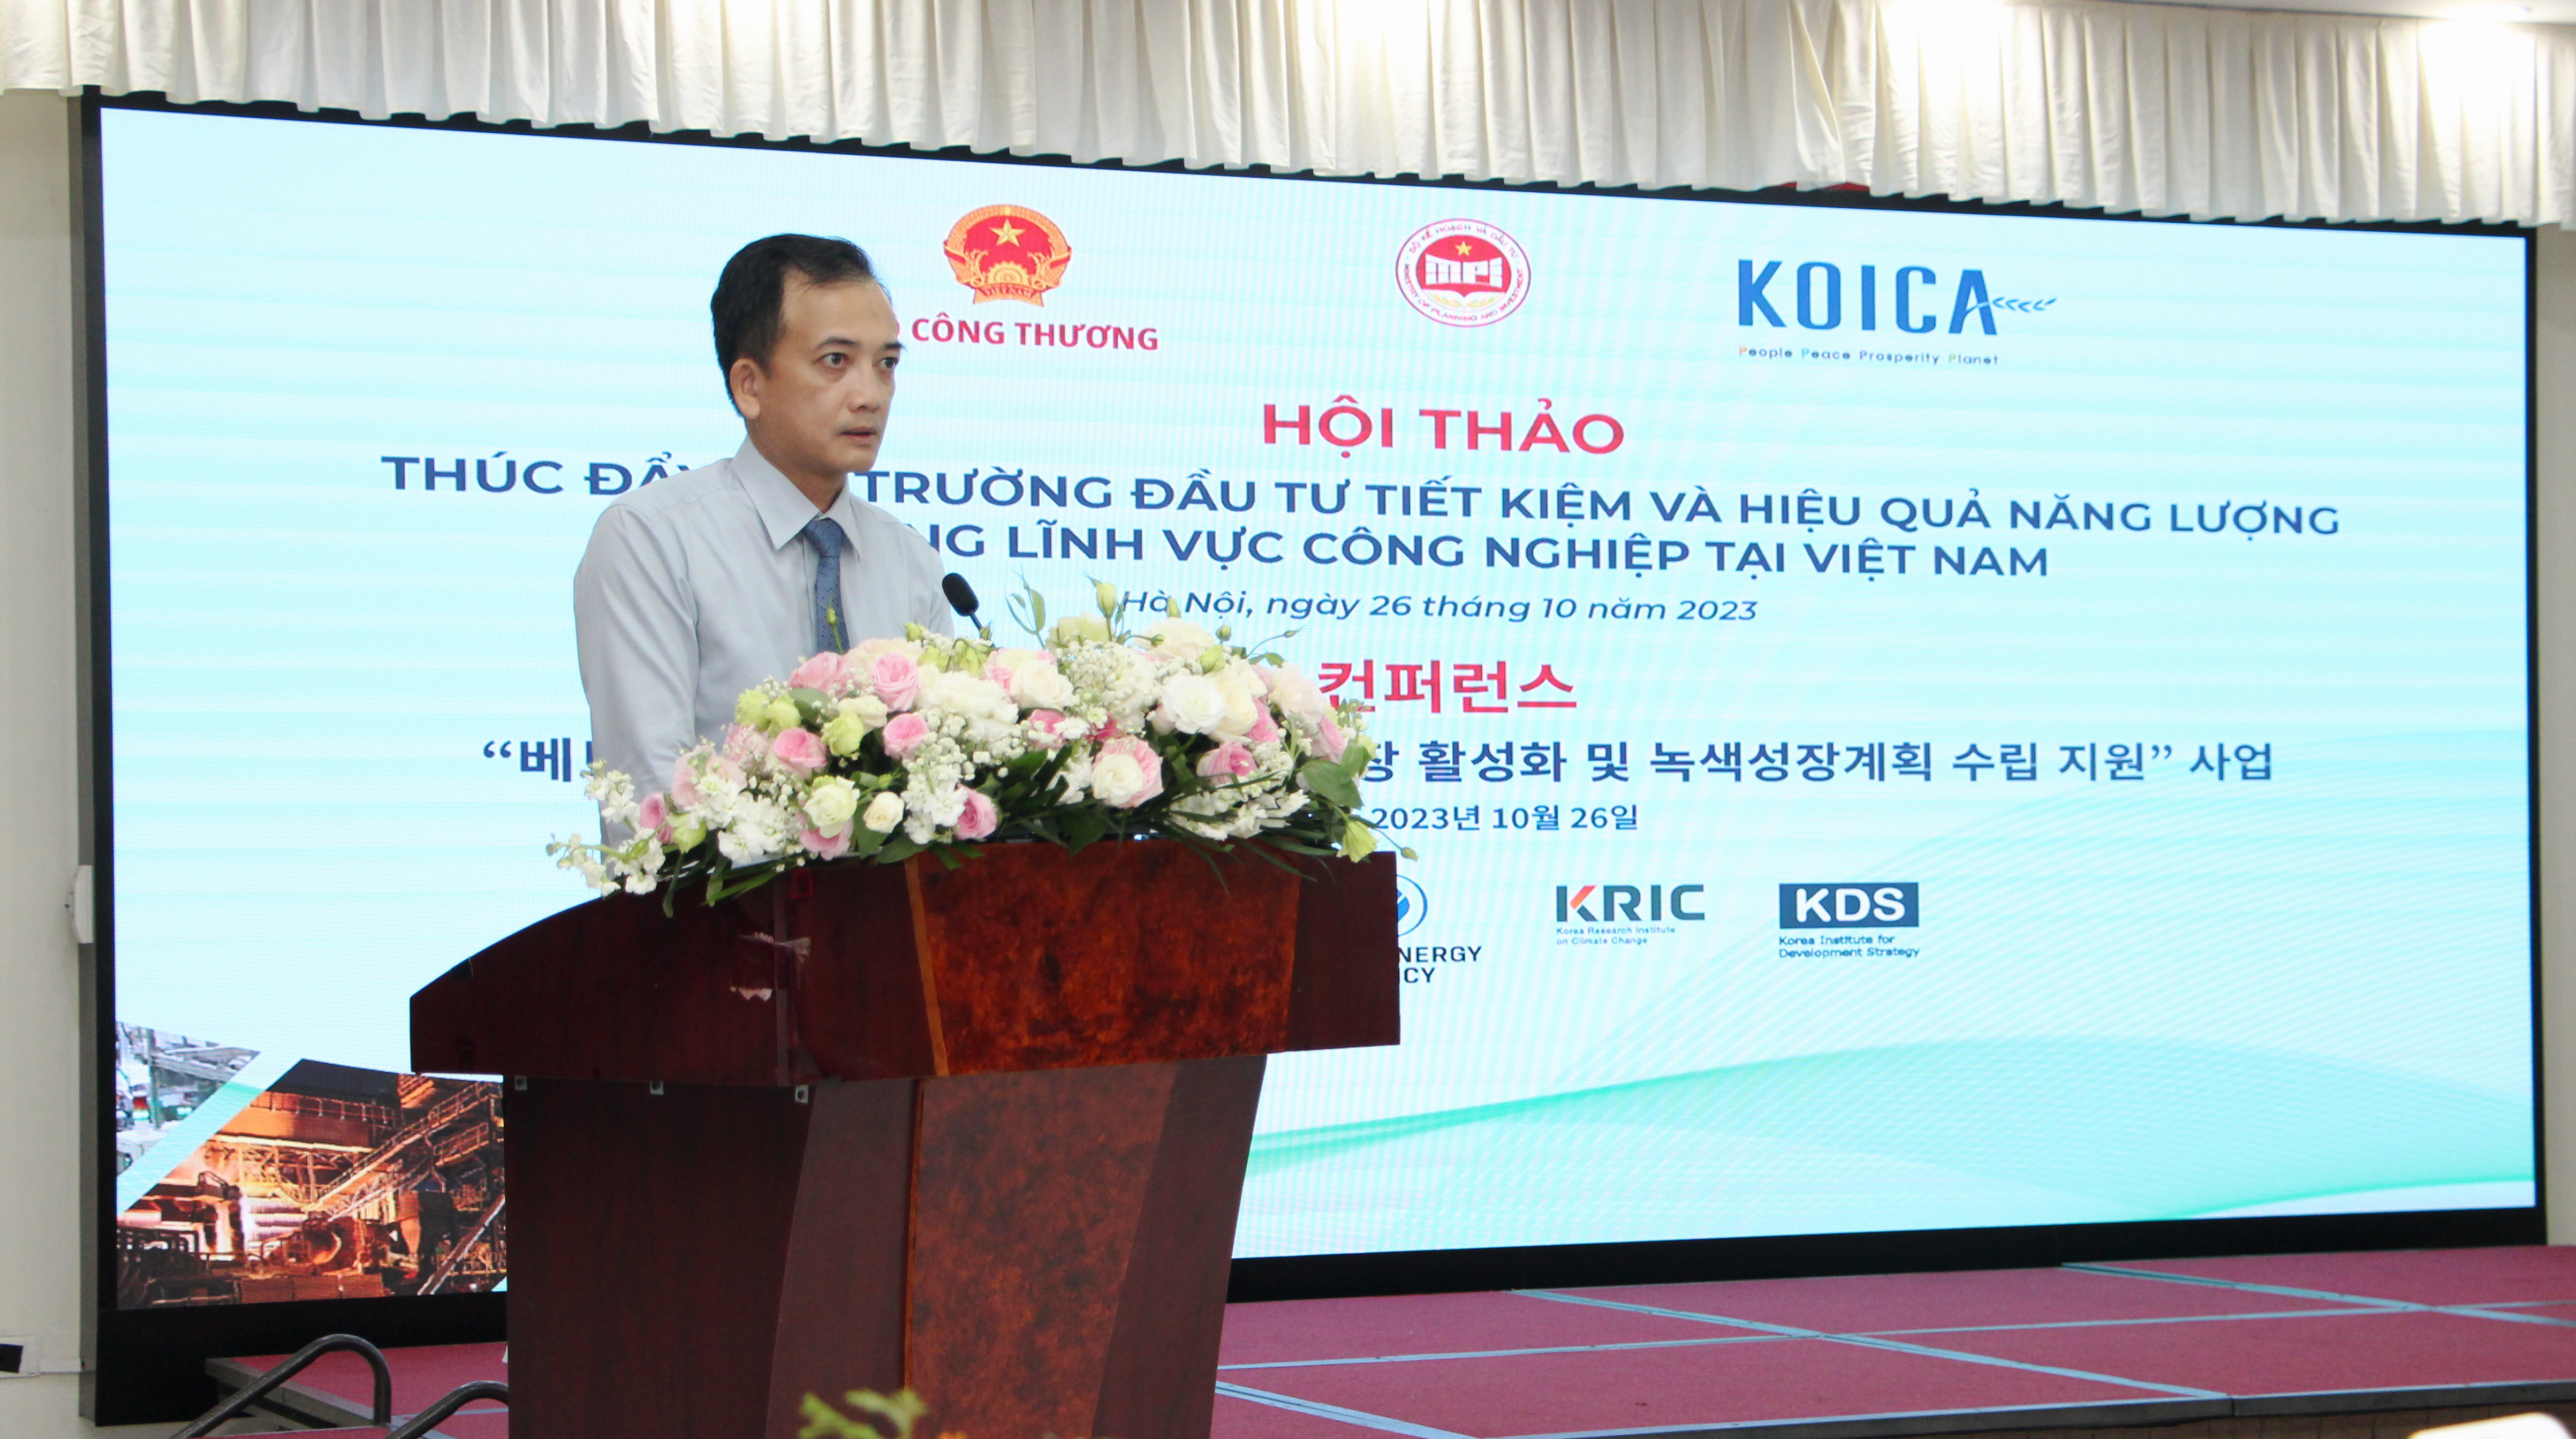 Đầu tư  tiết kiệm và hiệu quả năng lượng trong lĩnh vực công nghiệp – Hiện thực hóa kế hoạch hành động tăng trưởng xanh Việt Nam